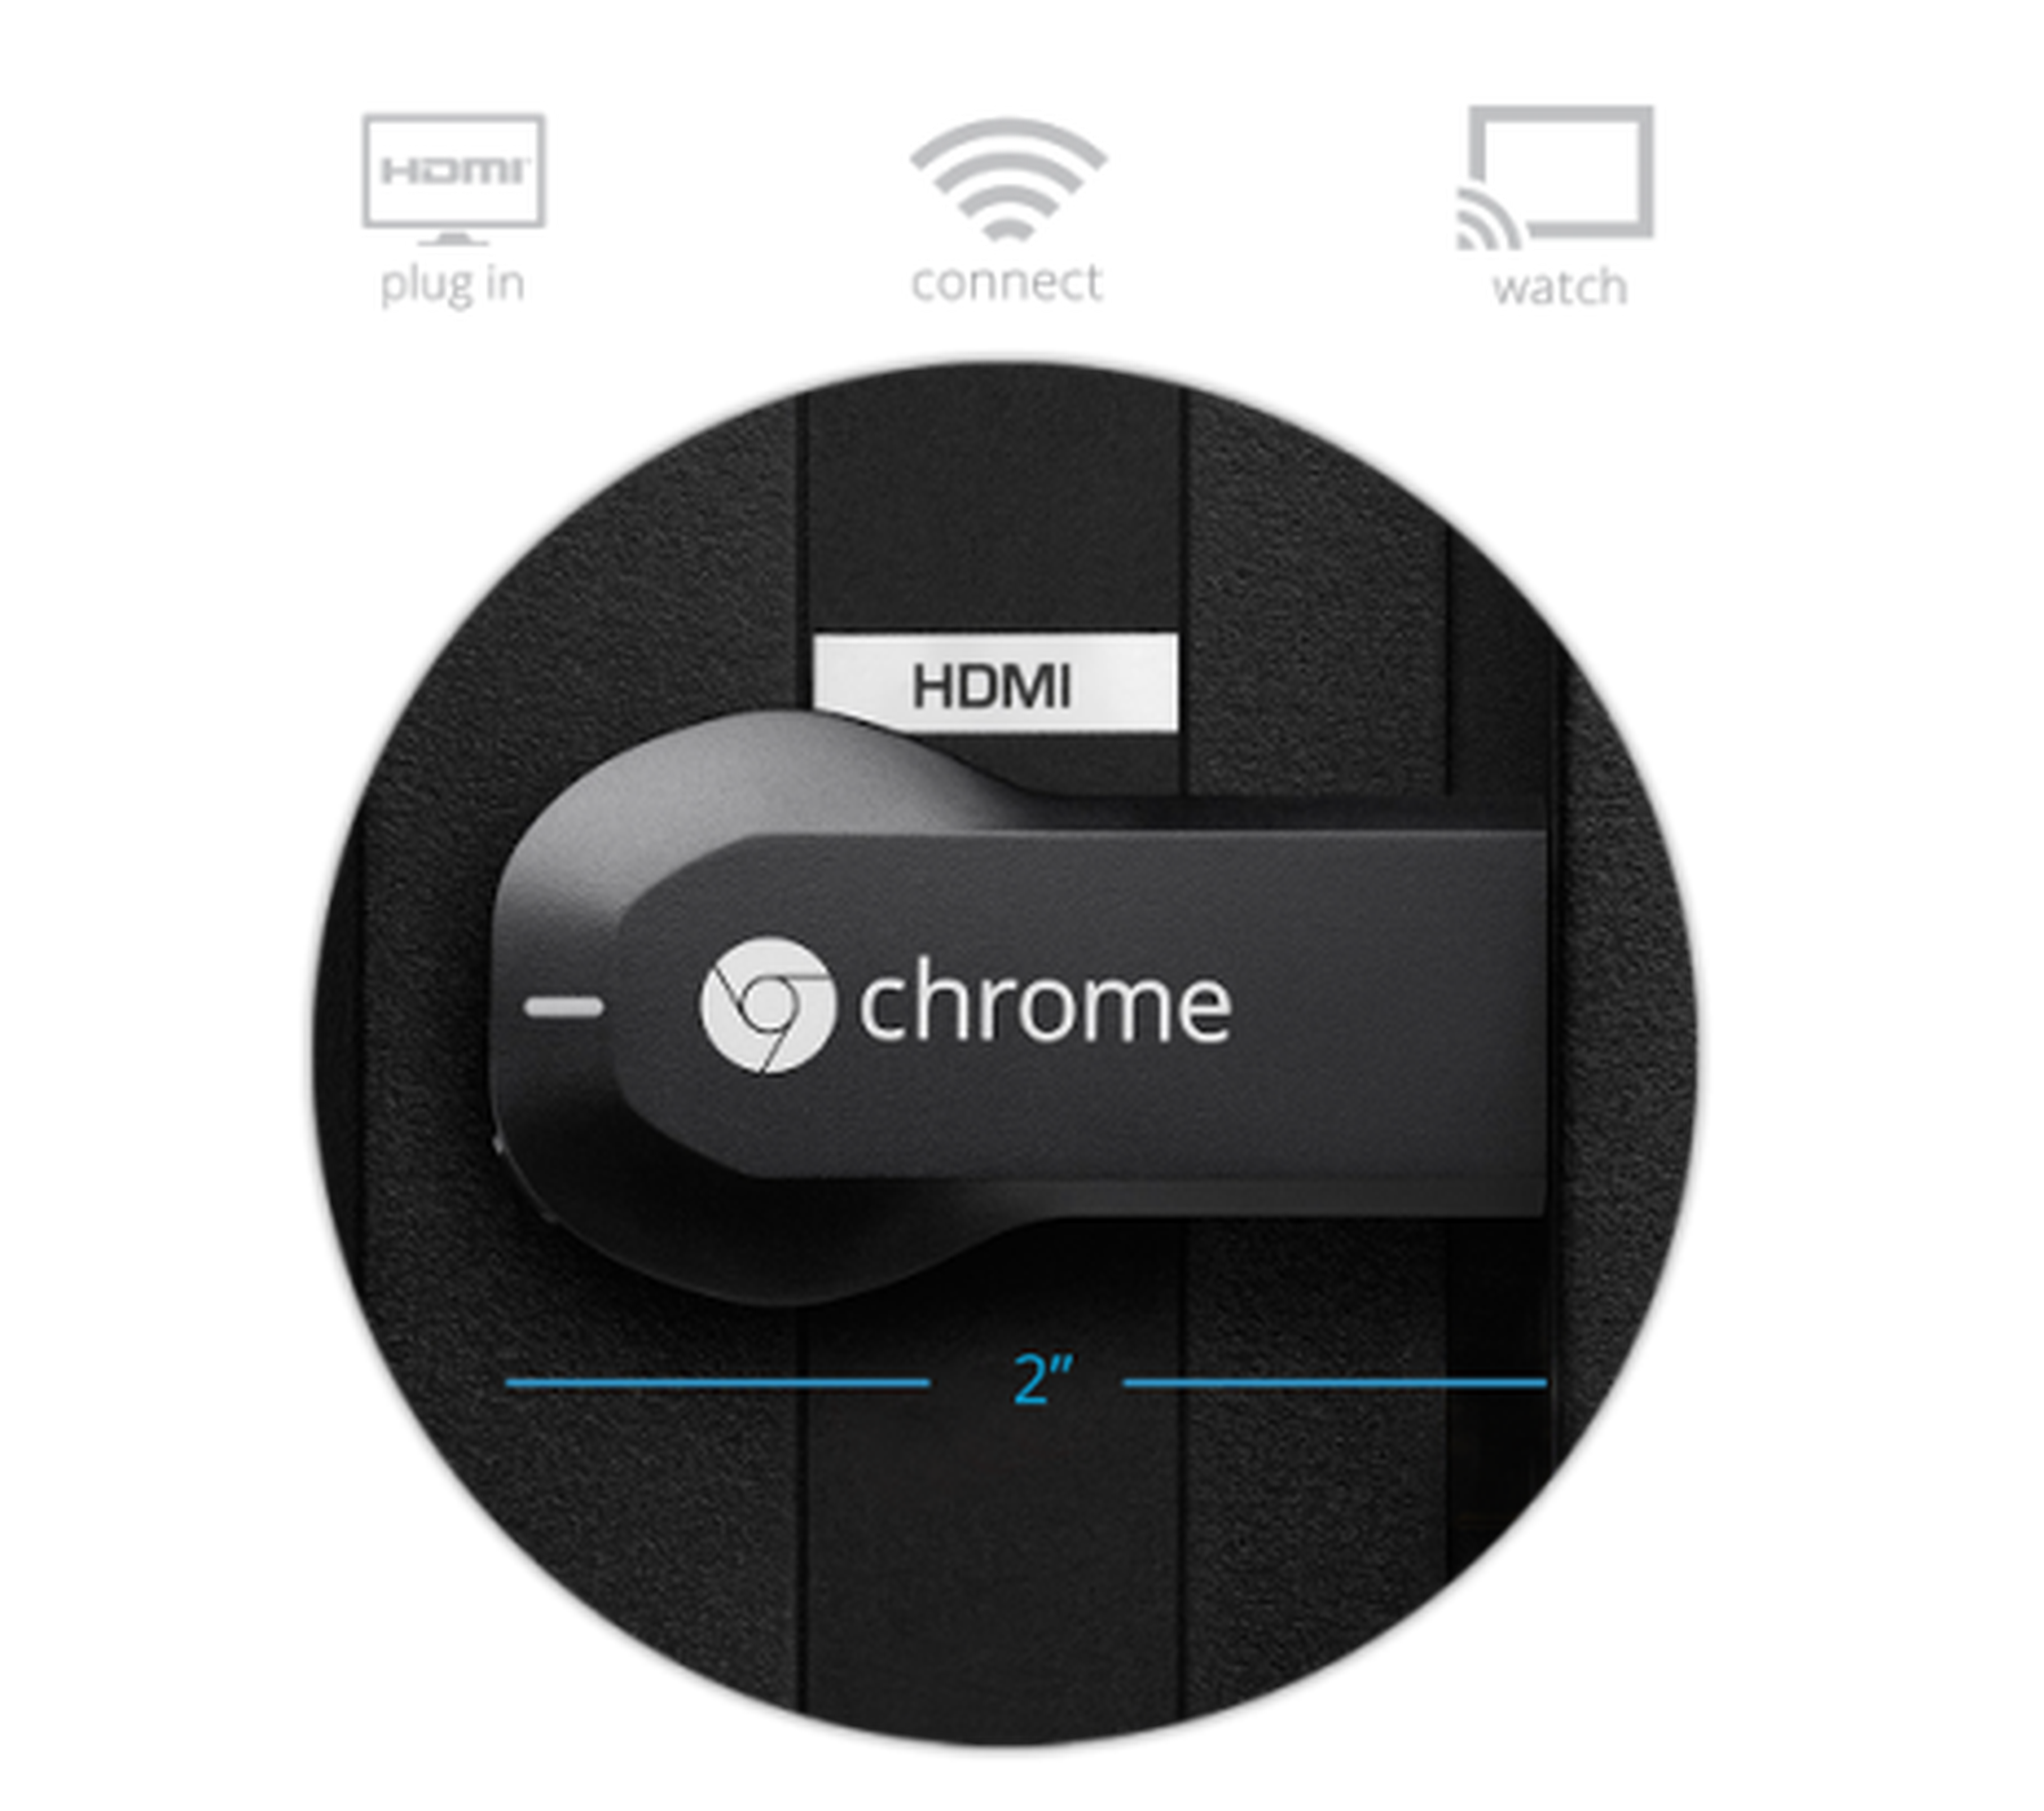 chromecast de Google